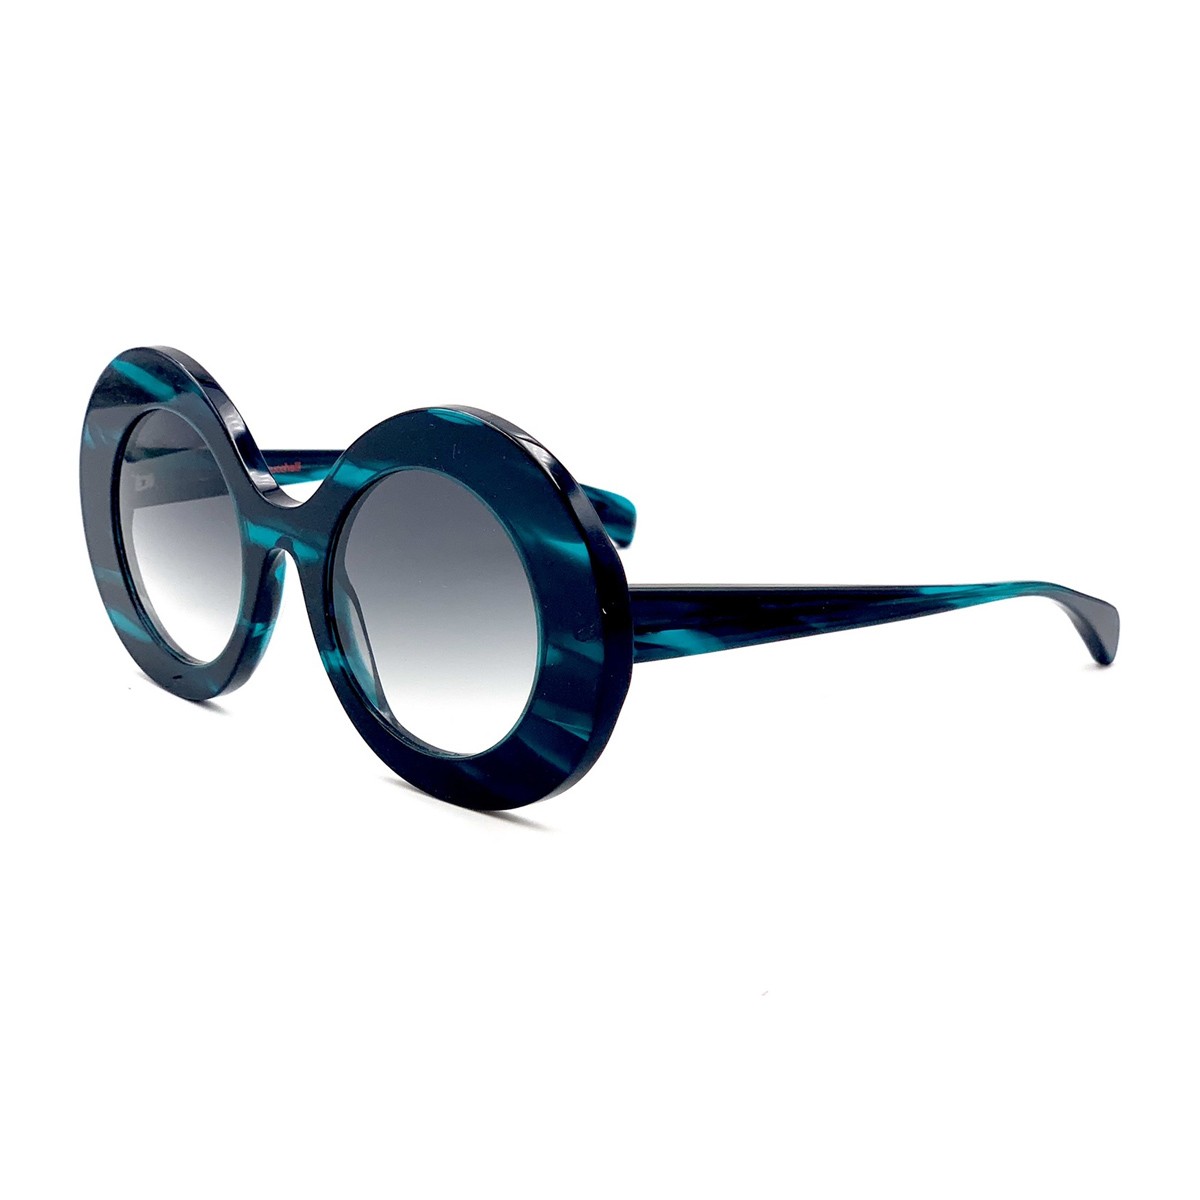 Rte Des Plages 222 | Women's sunglasses